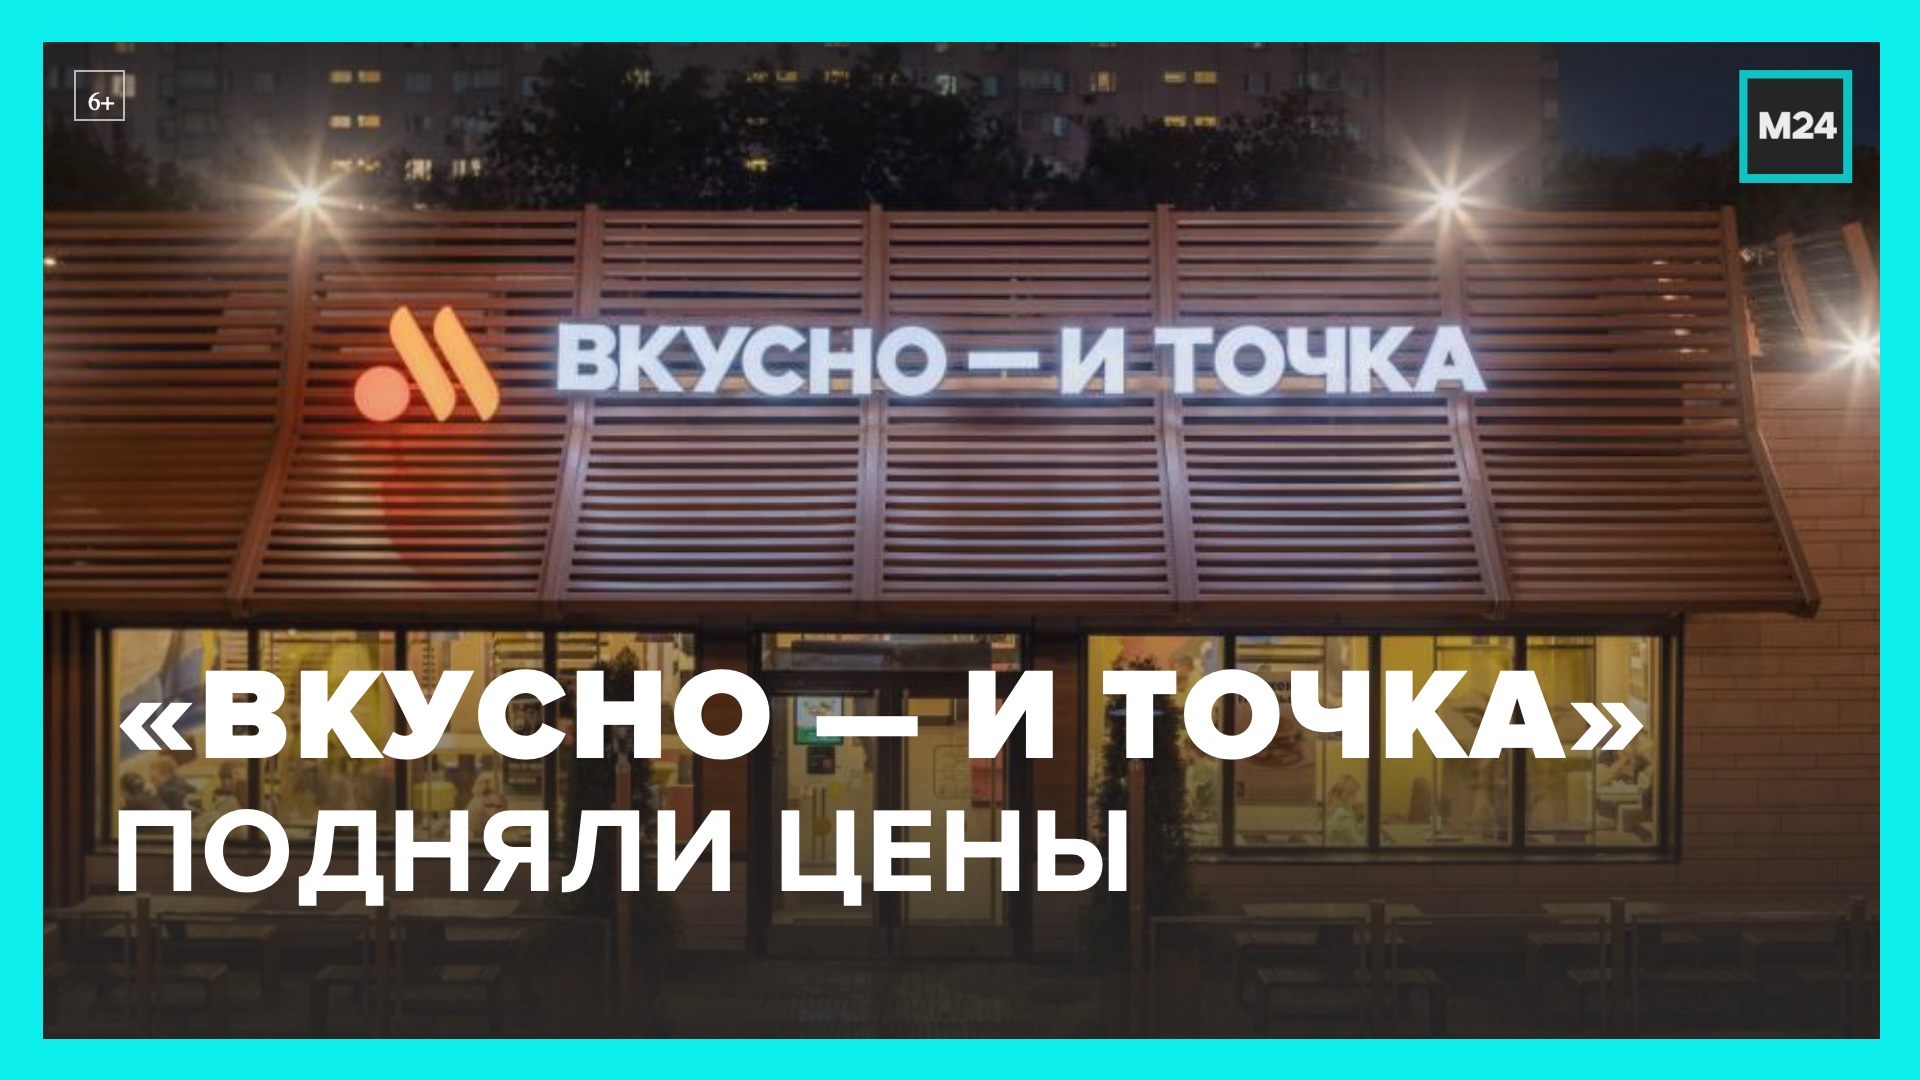 Сеть "Вкусно – и точка" подняла цены на бургеры - Москва 24